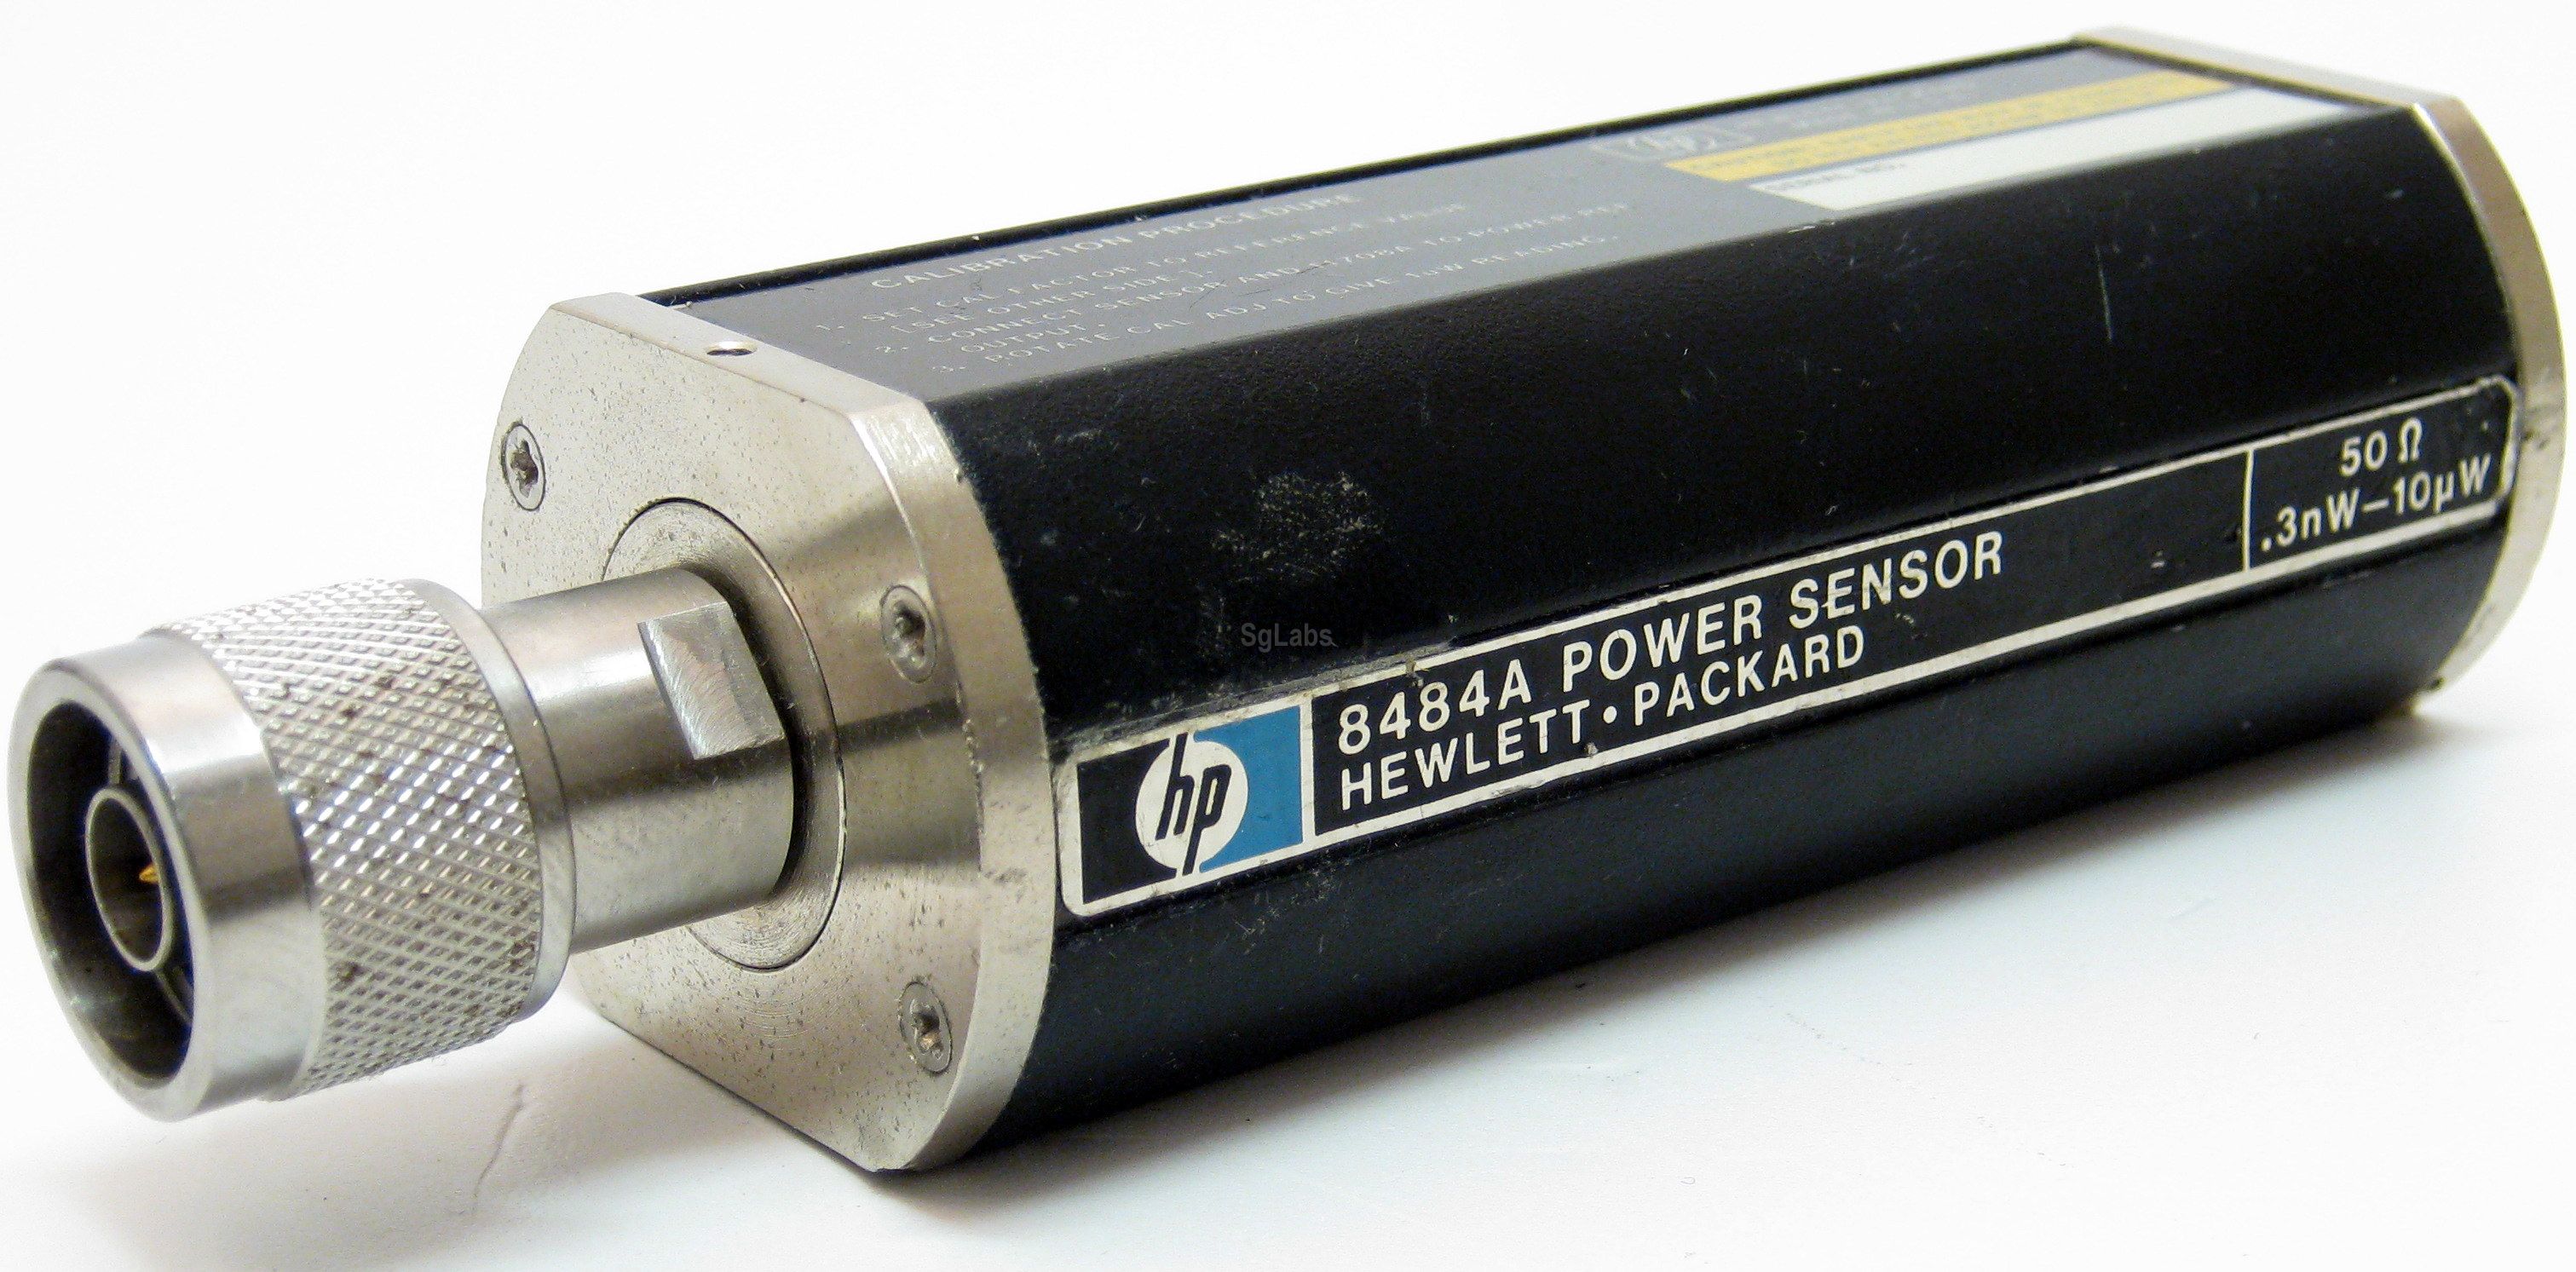 8484A Used HP Power Sensor 50ohm 10MHz-18GHz 0.3nw-10µw 